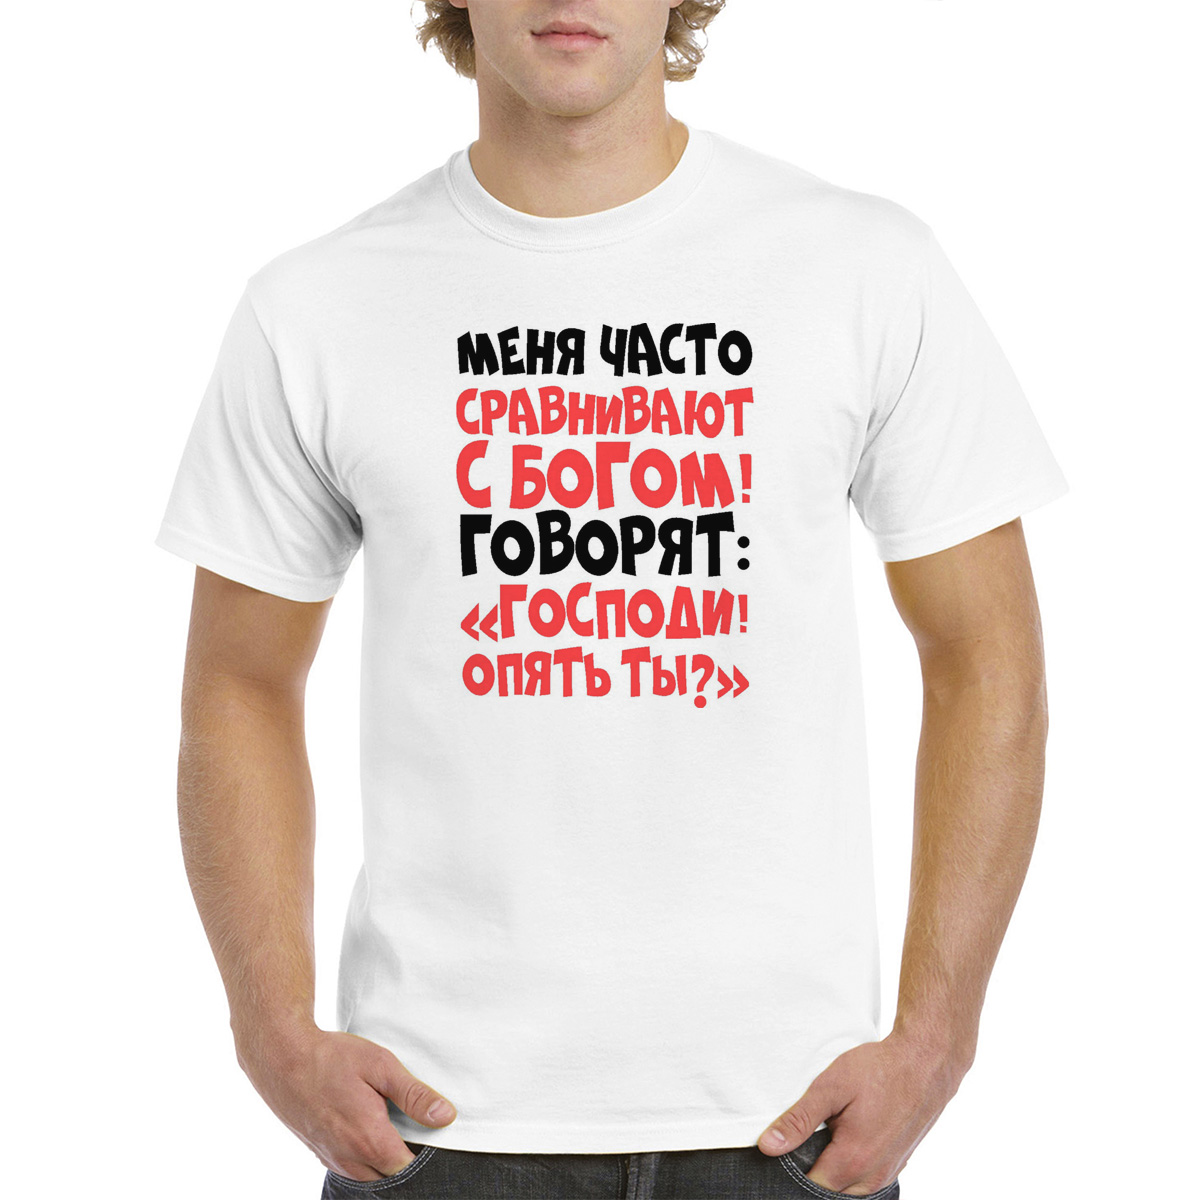 Мужская белая футболка CoolPodarok M0114132, размер 62 по российской шкале.